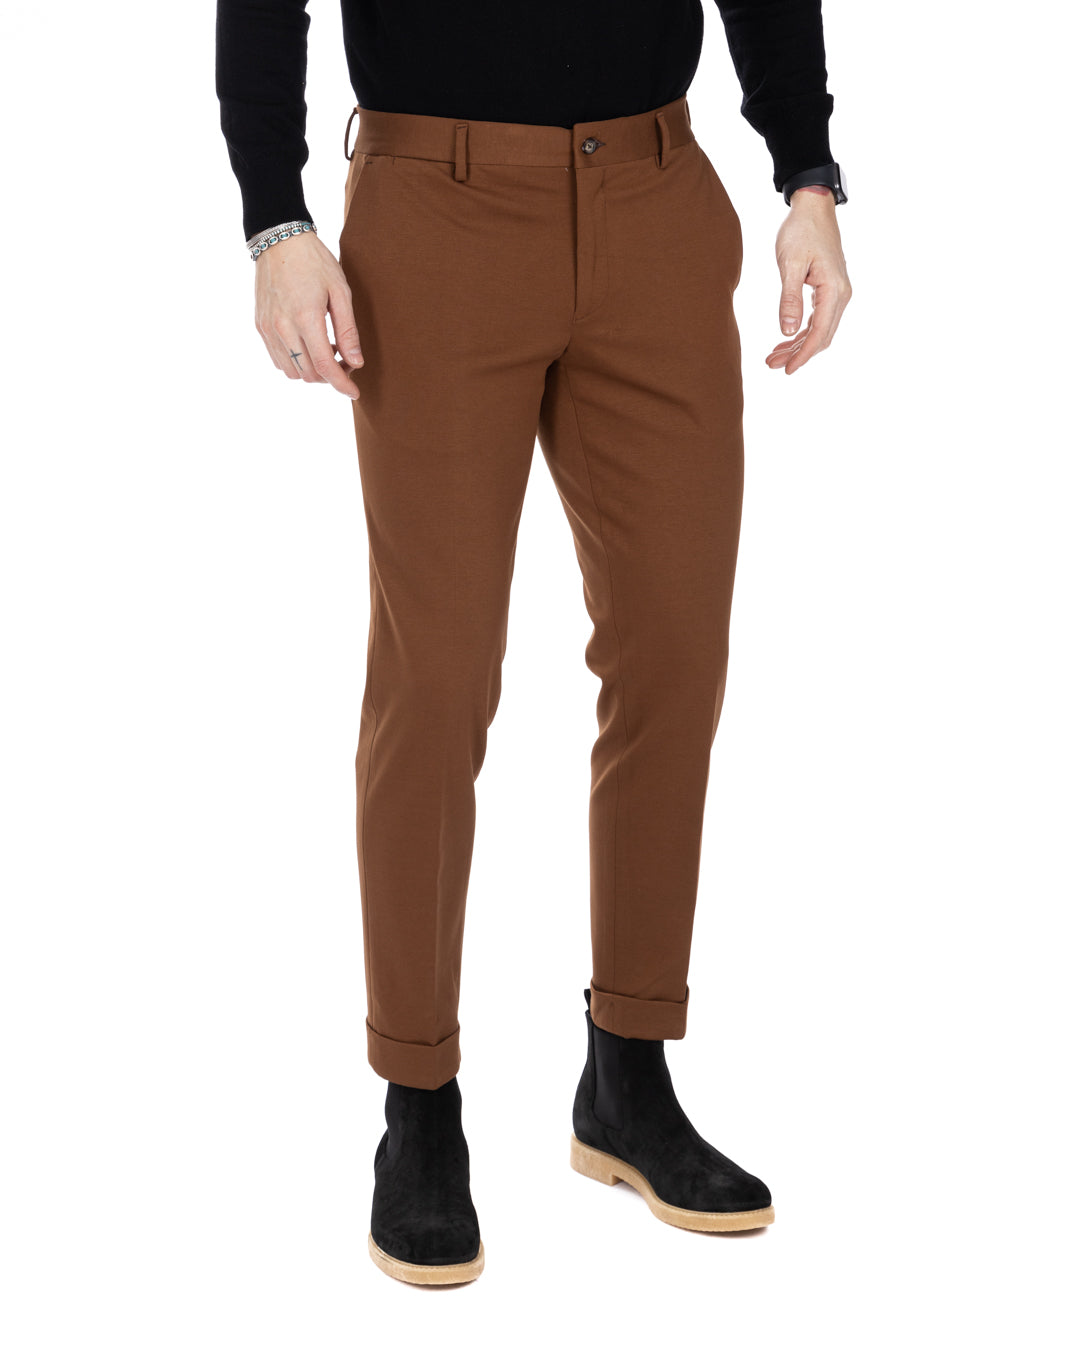 Altamura - classic brown trousers